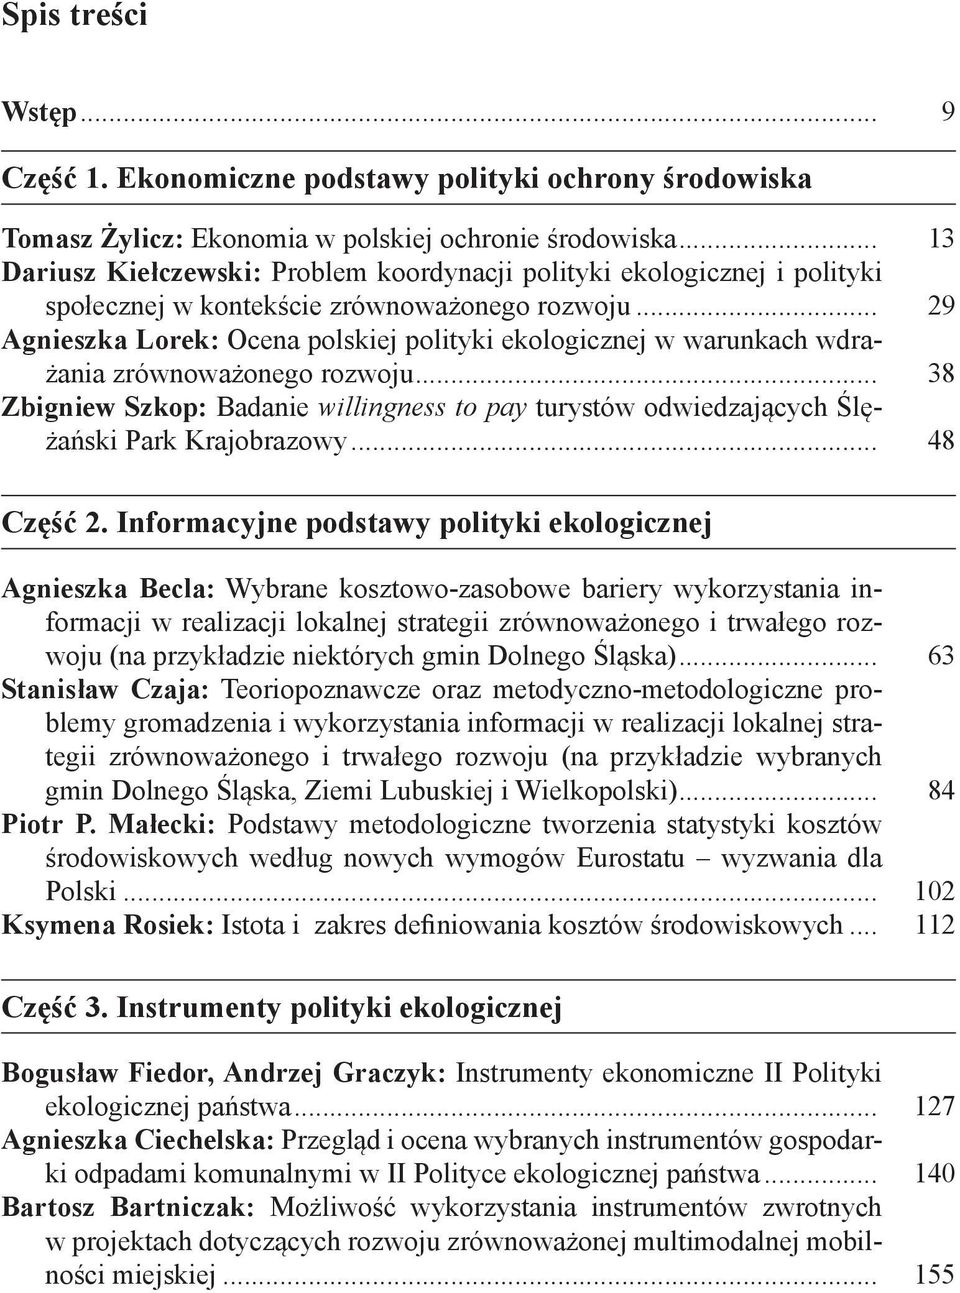 .. 29 Agnieszka Lorek: Ocena polskiej polityki ekologicznej w warunkach wdrażania zrównoważonego rozwoju.